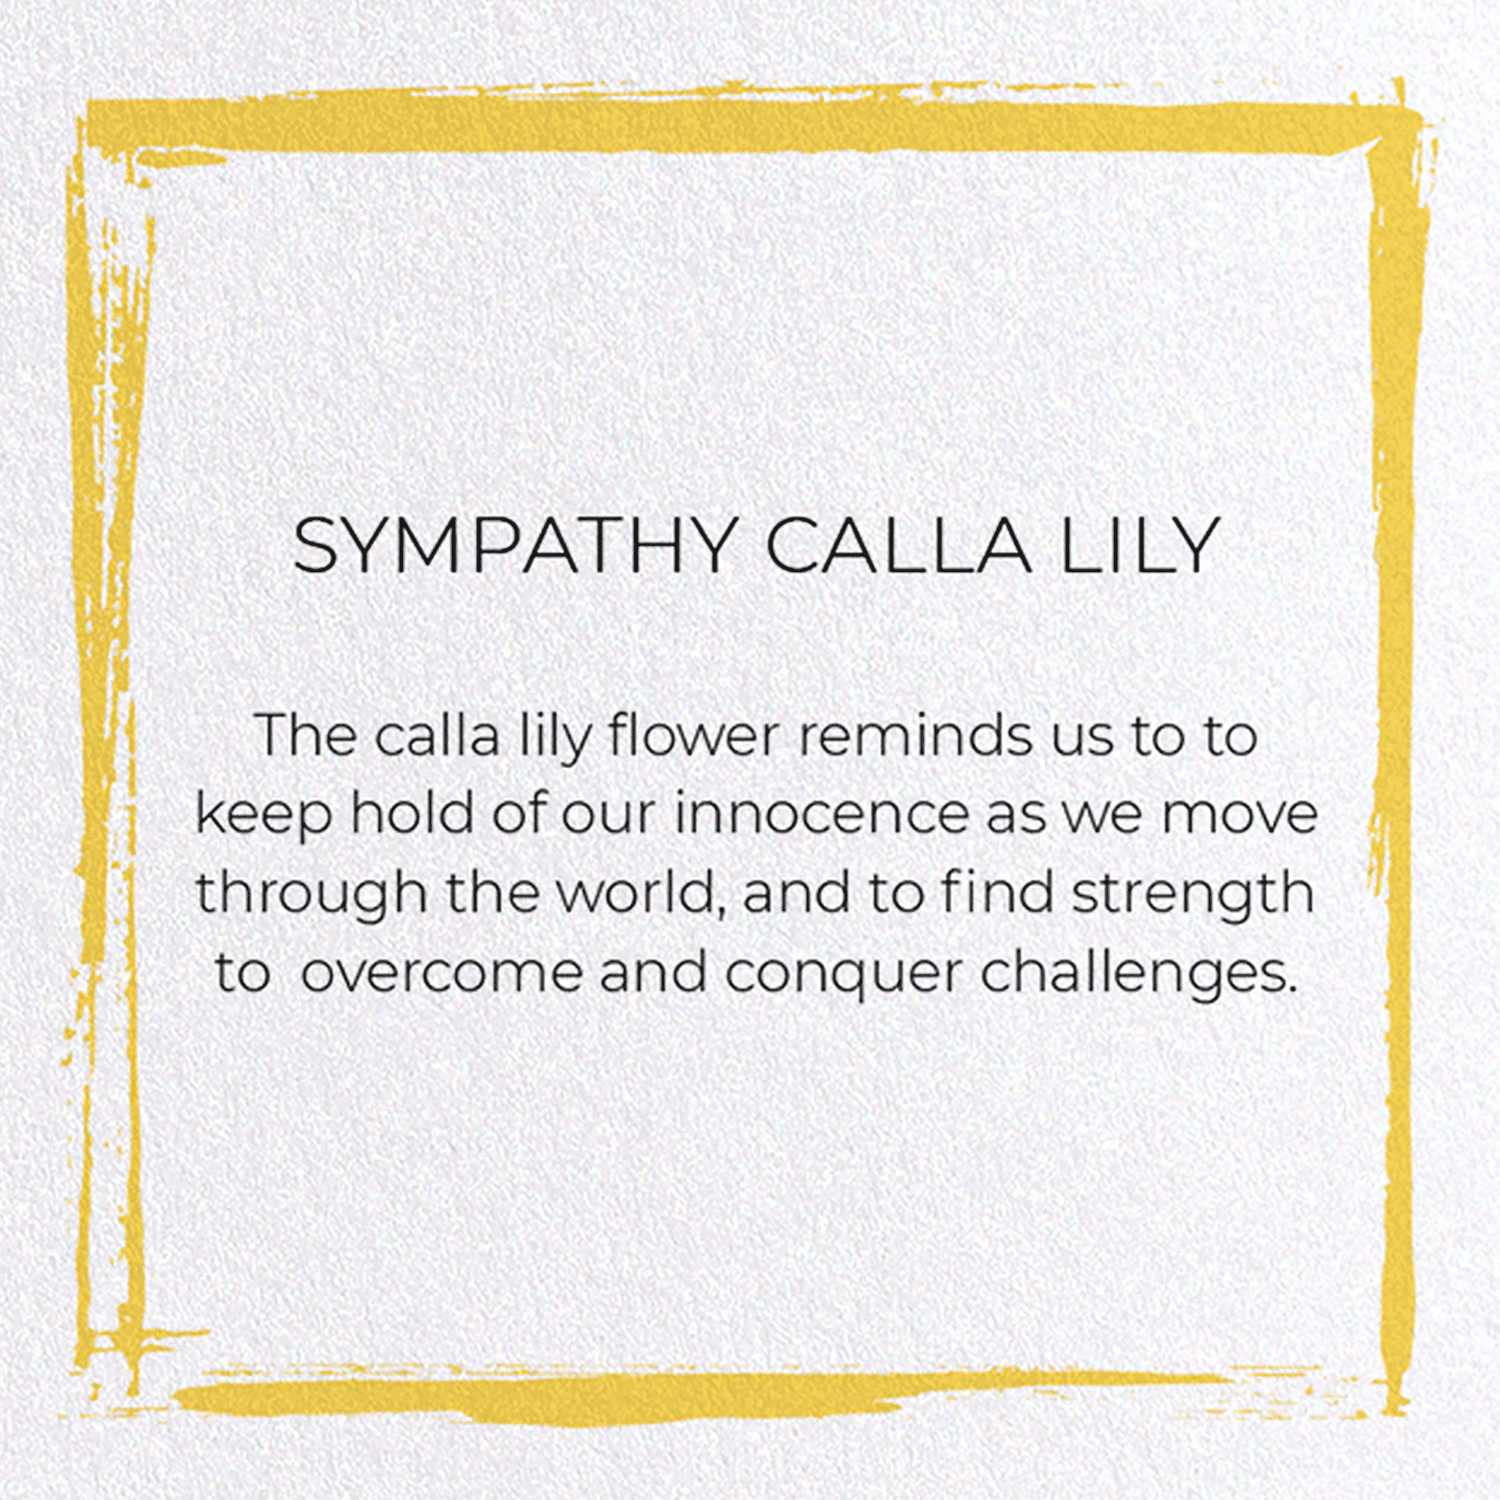 SYMPATHY CALLA LILY